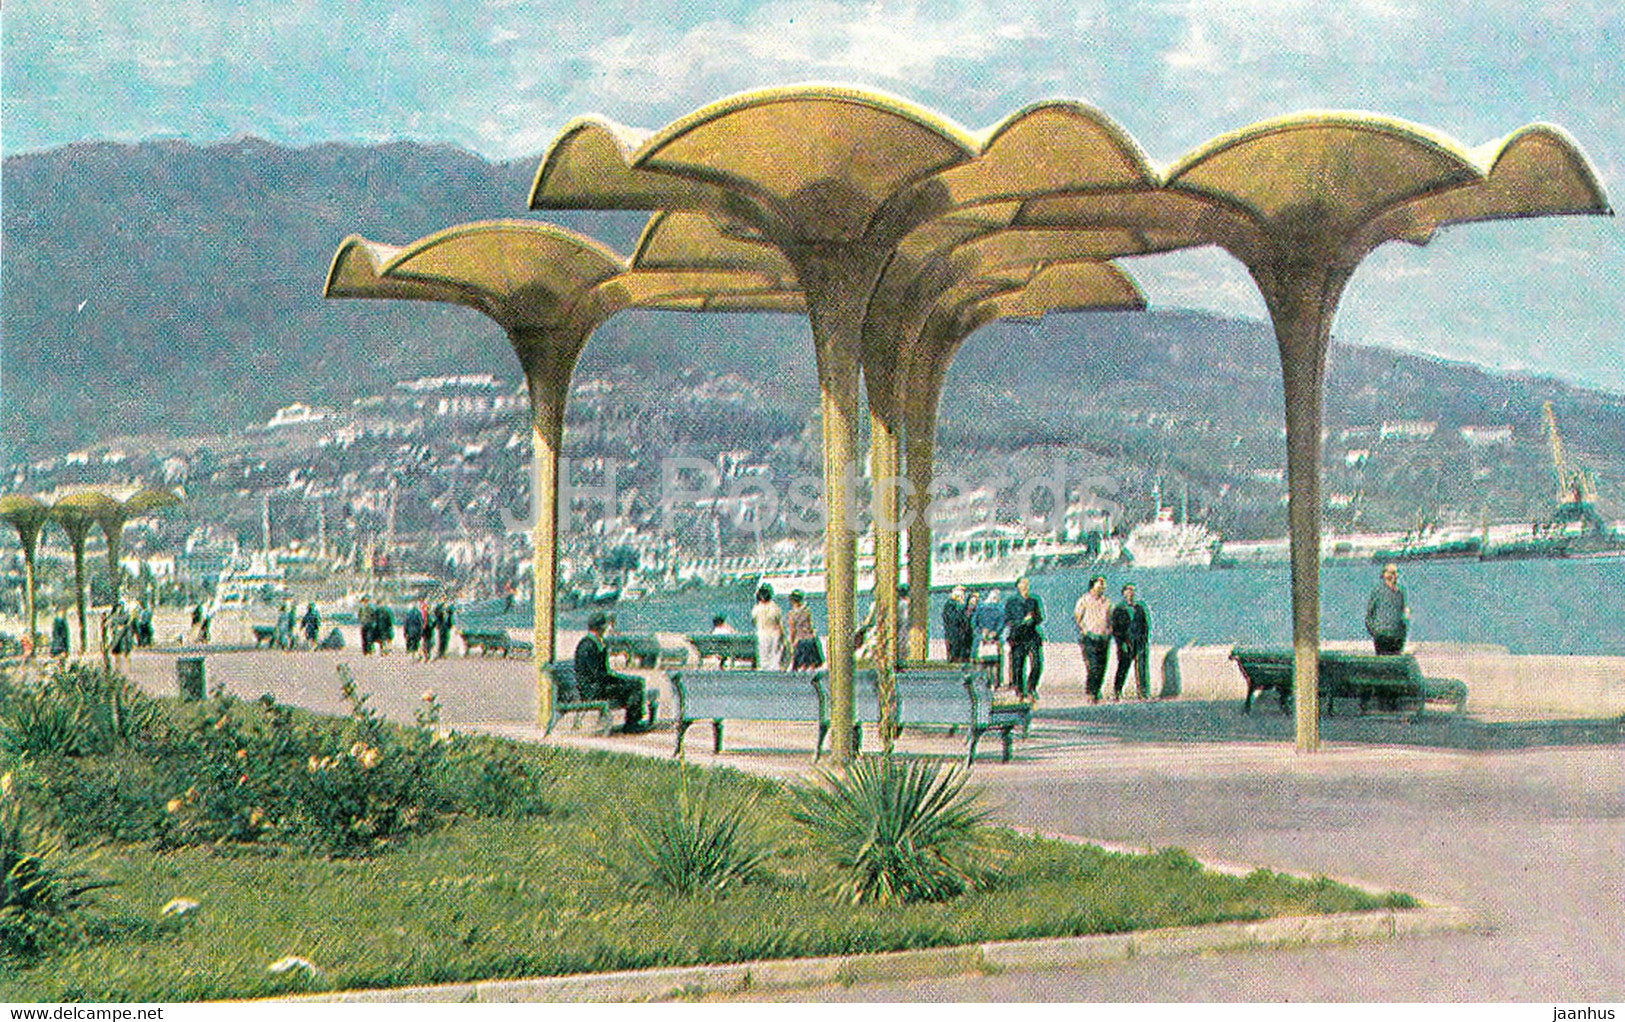 Embankment in Yalta - Crimea - Ukraine USSR - unused - JH Postcards